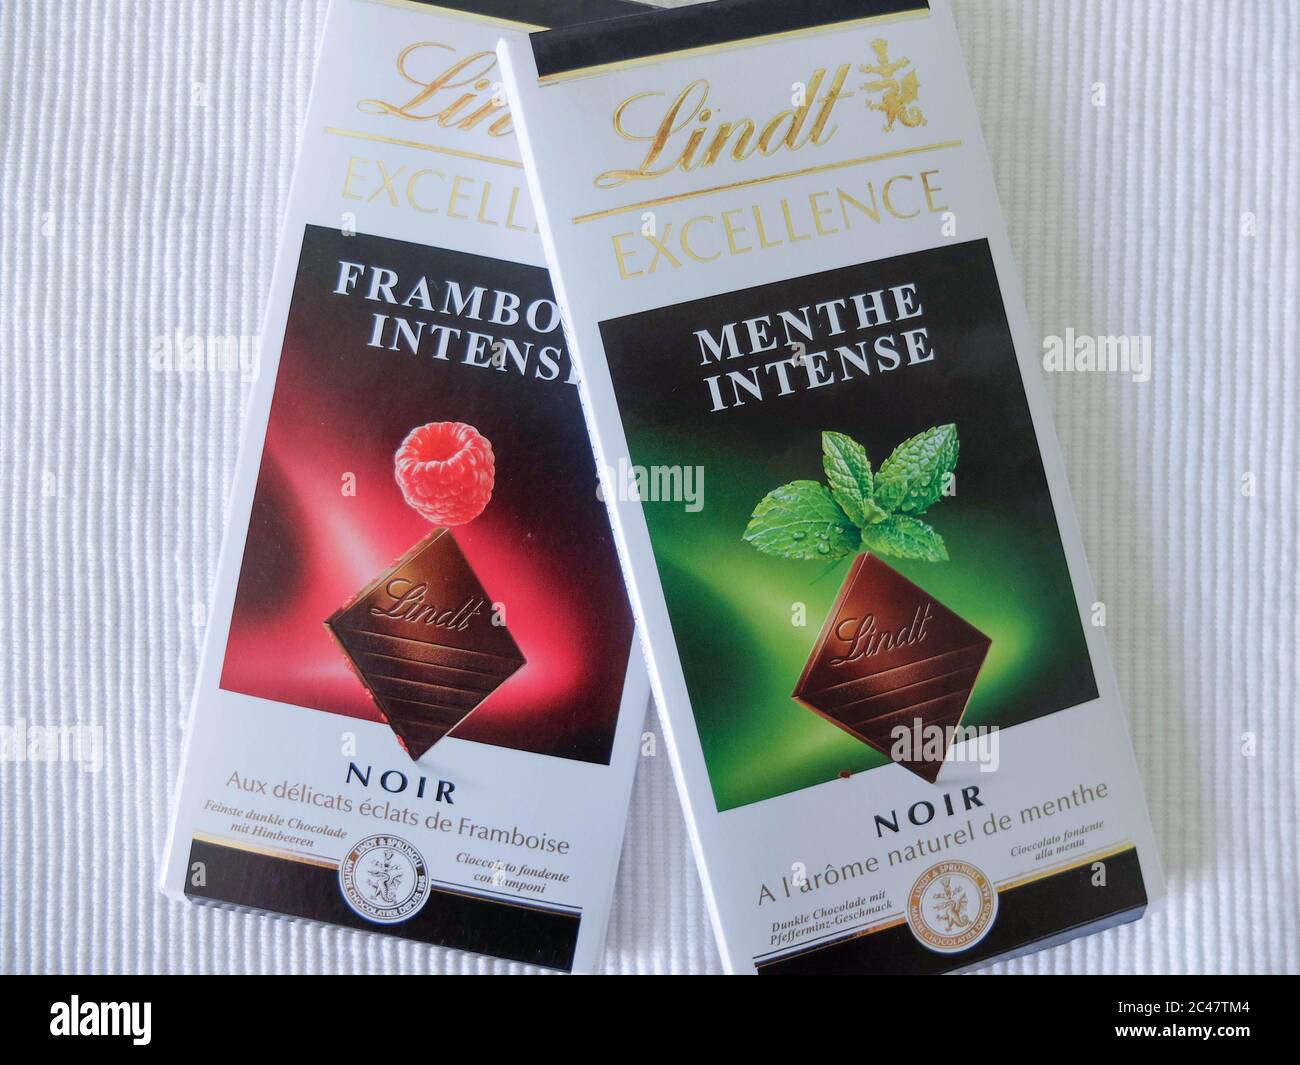 Barre de chocolat Lindt, emballage. Lindt est une marque de chocolat suisse  de luxe et de qualité Photo Stock - Alamy